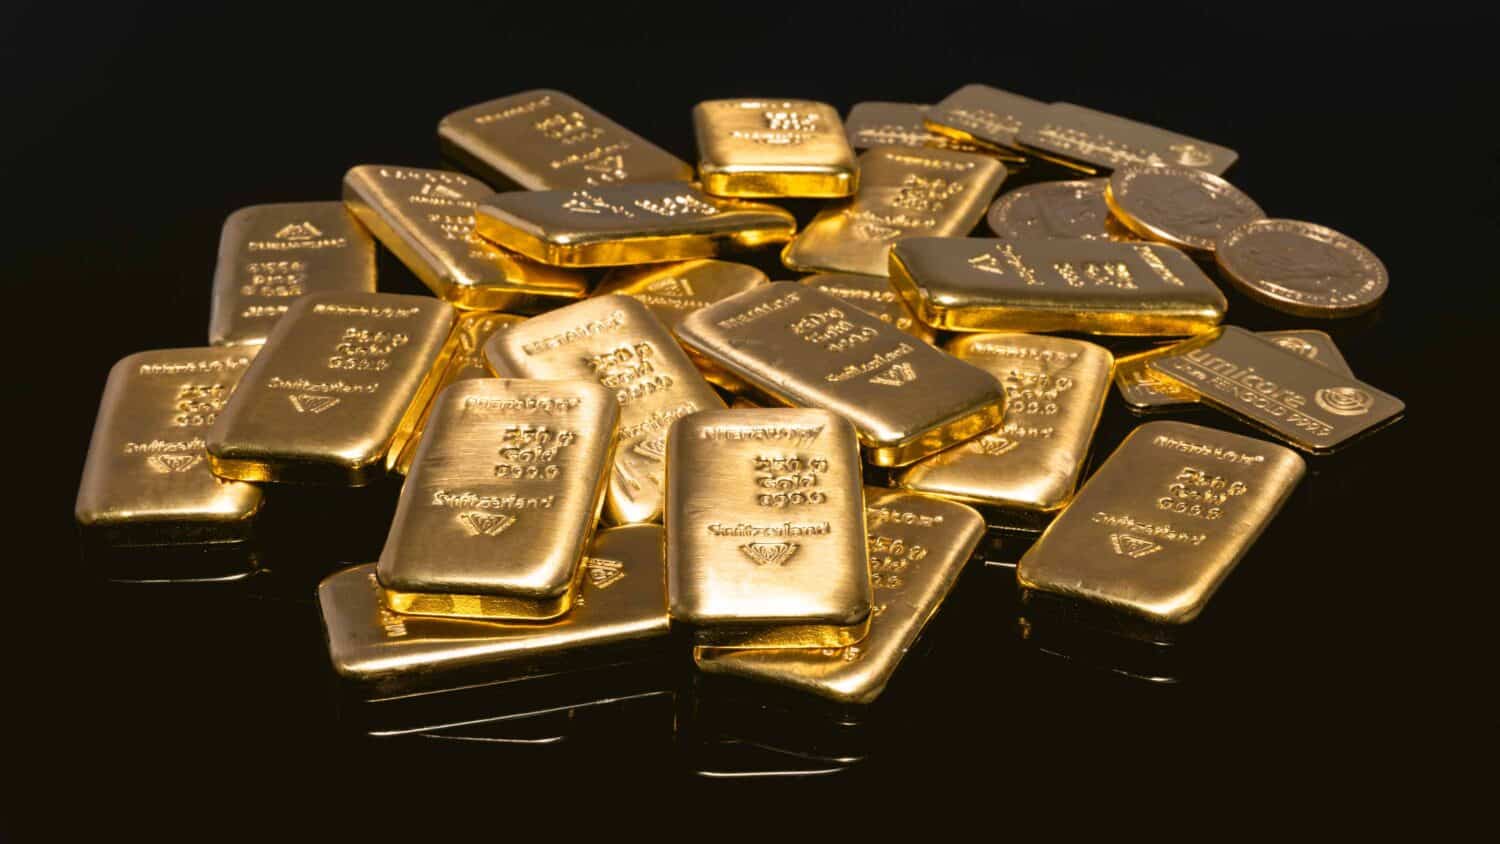 1 gramos nga presyo sa gold bar - gibug-aton sa gold bar - gold bar - gibug-aton sa gold bar